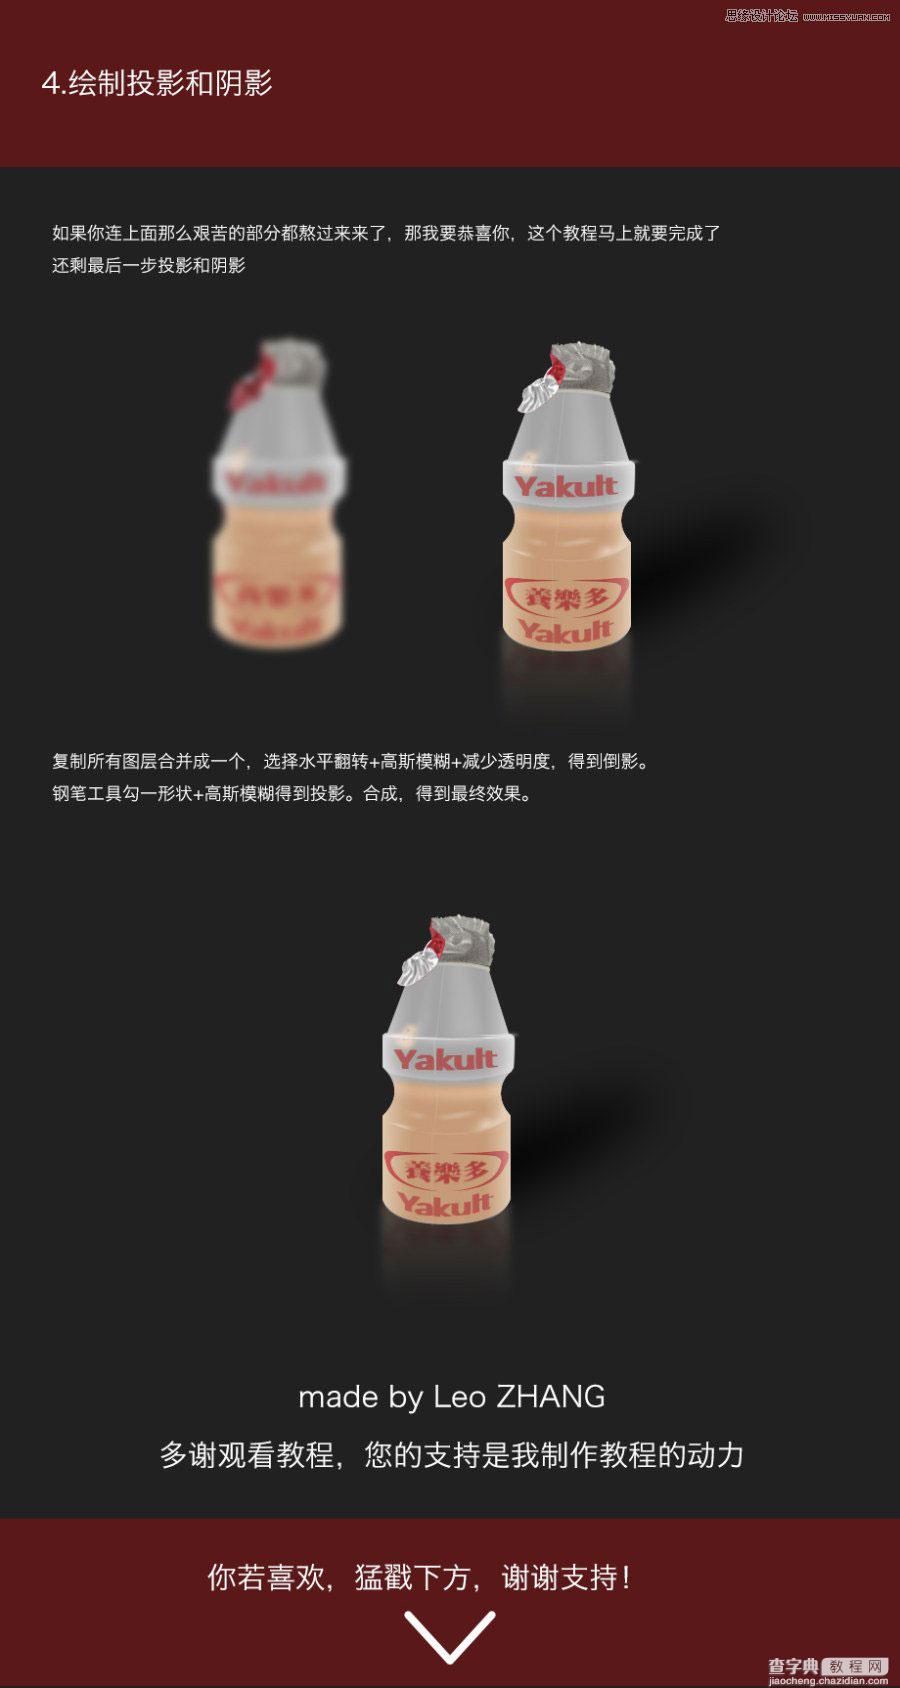 Photoshop详细解析养乐多乳酸菌奶瓶的绘制过程4